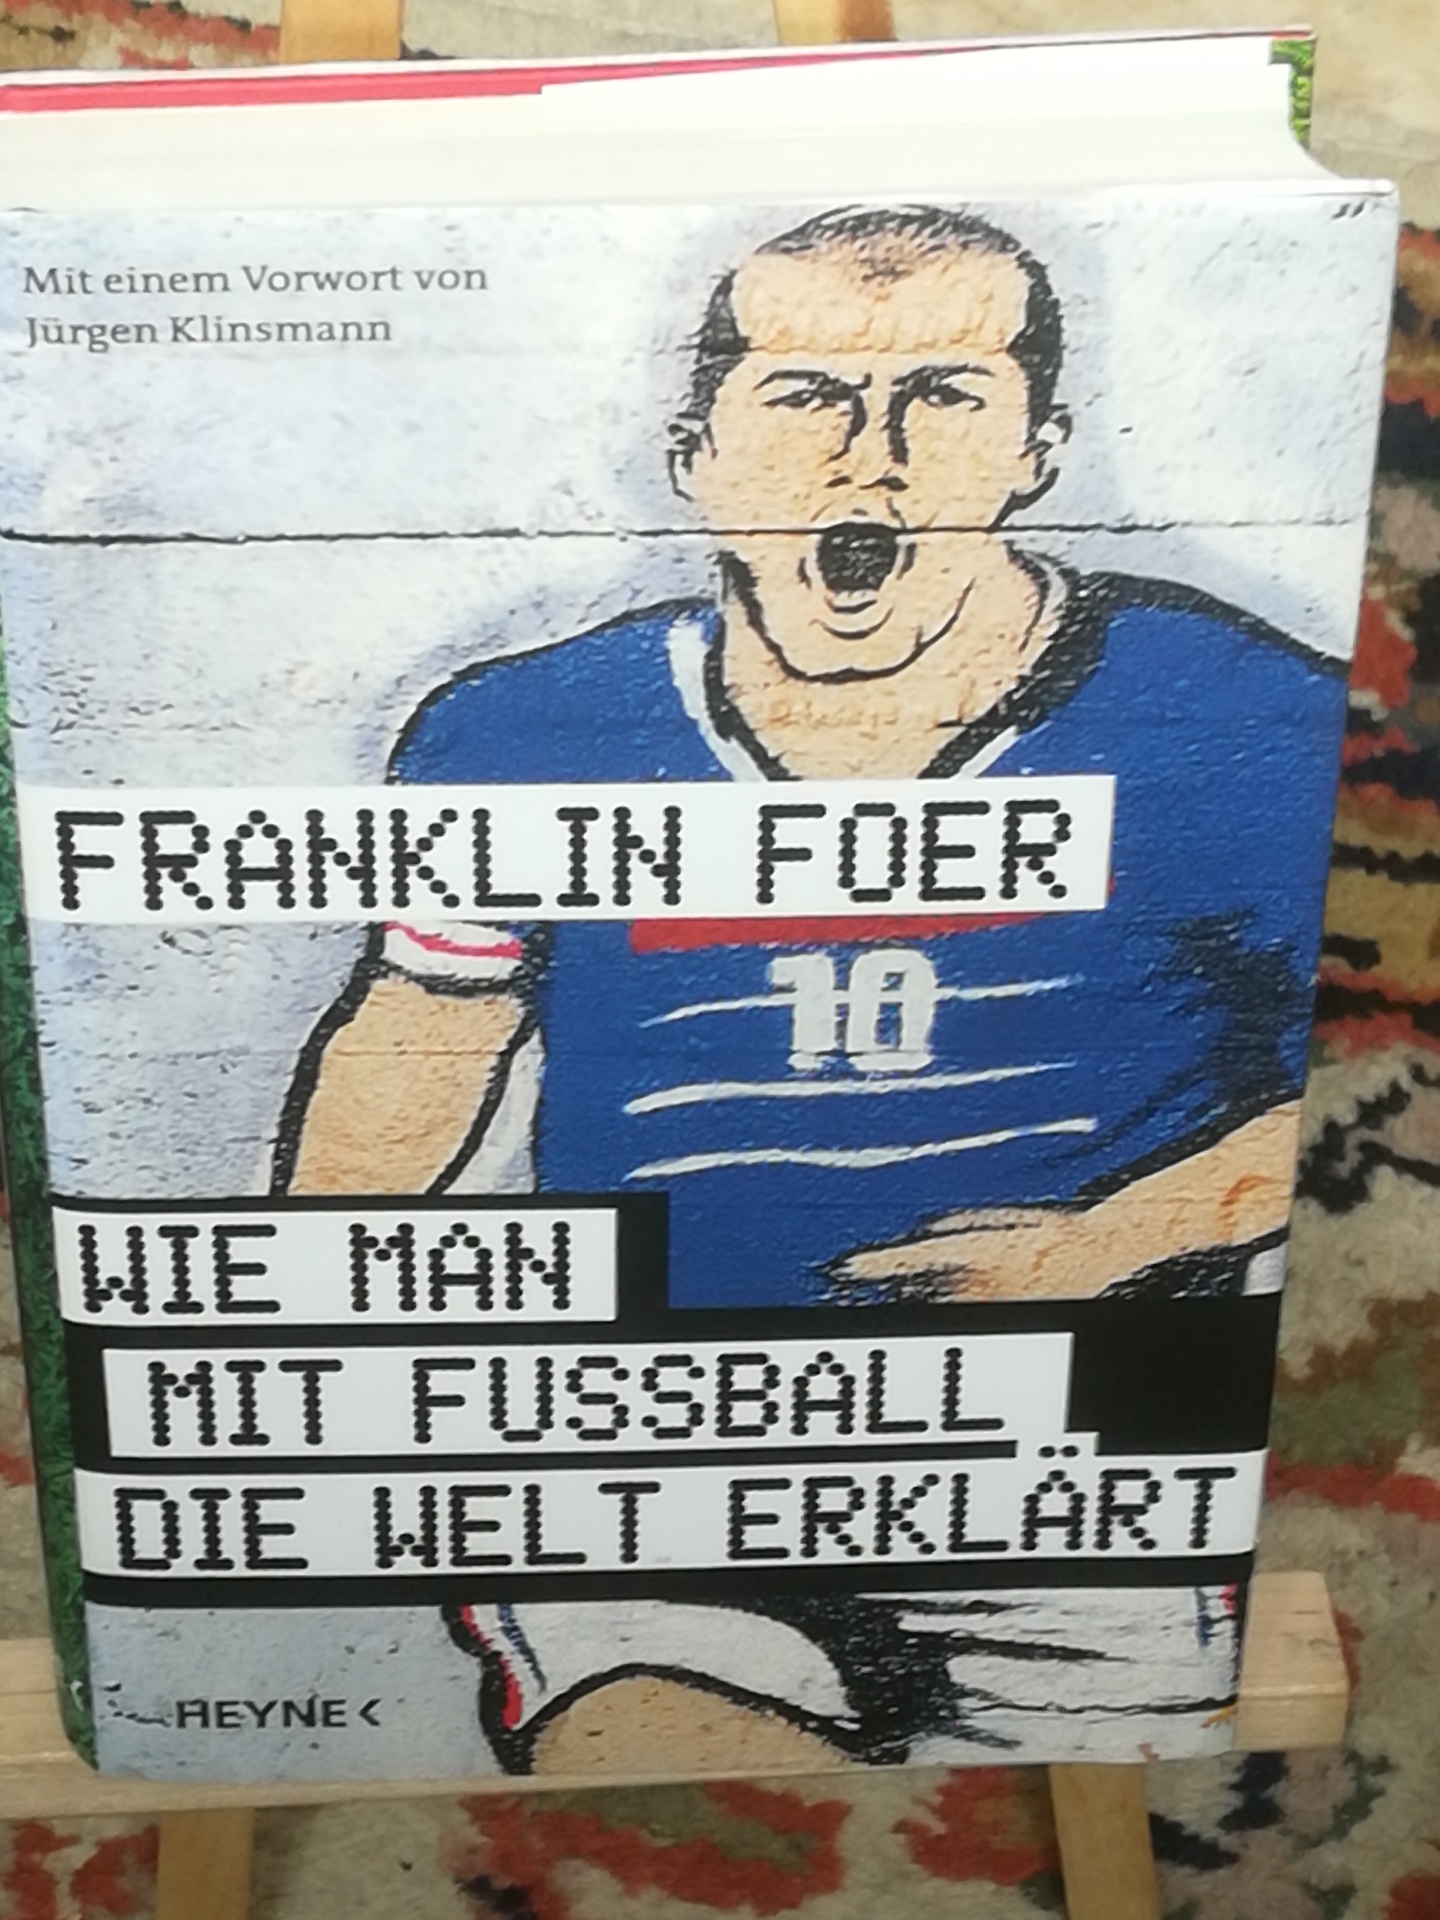 Wie man mit Fussball die Welt erklärt, mit einem Vorwort von Jürgen Klinsmann - Foer Franklin